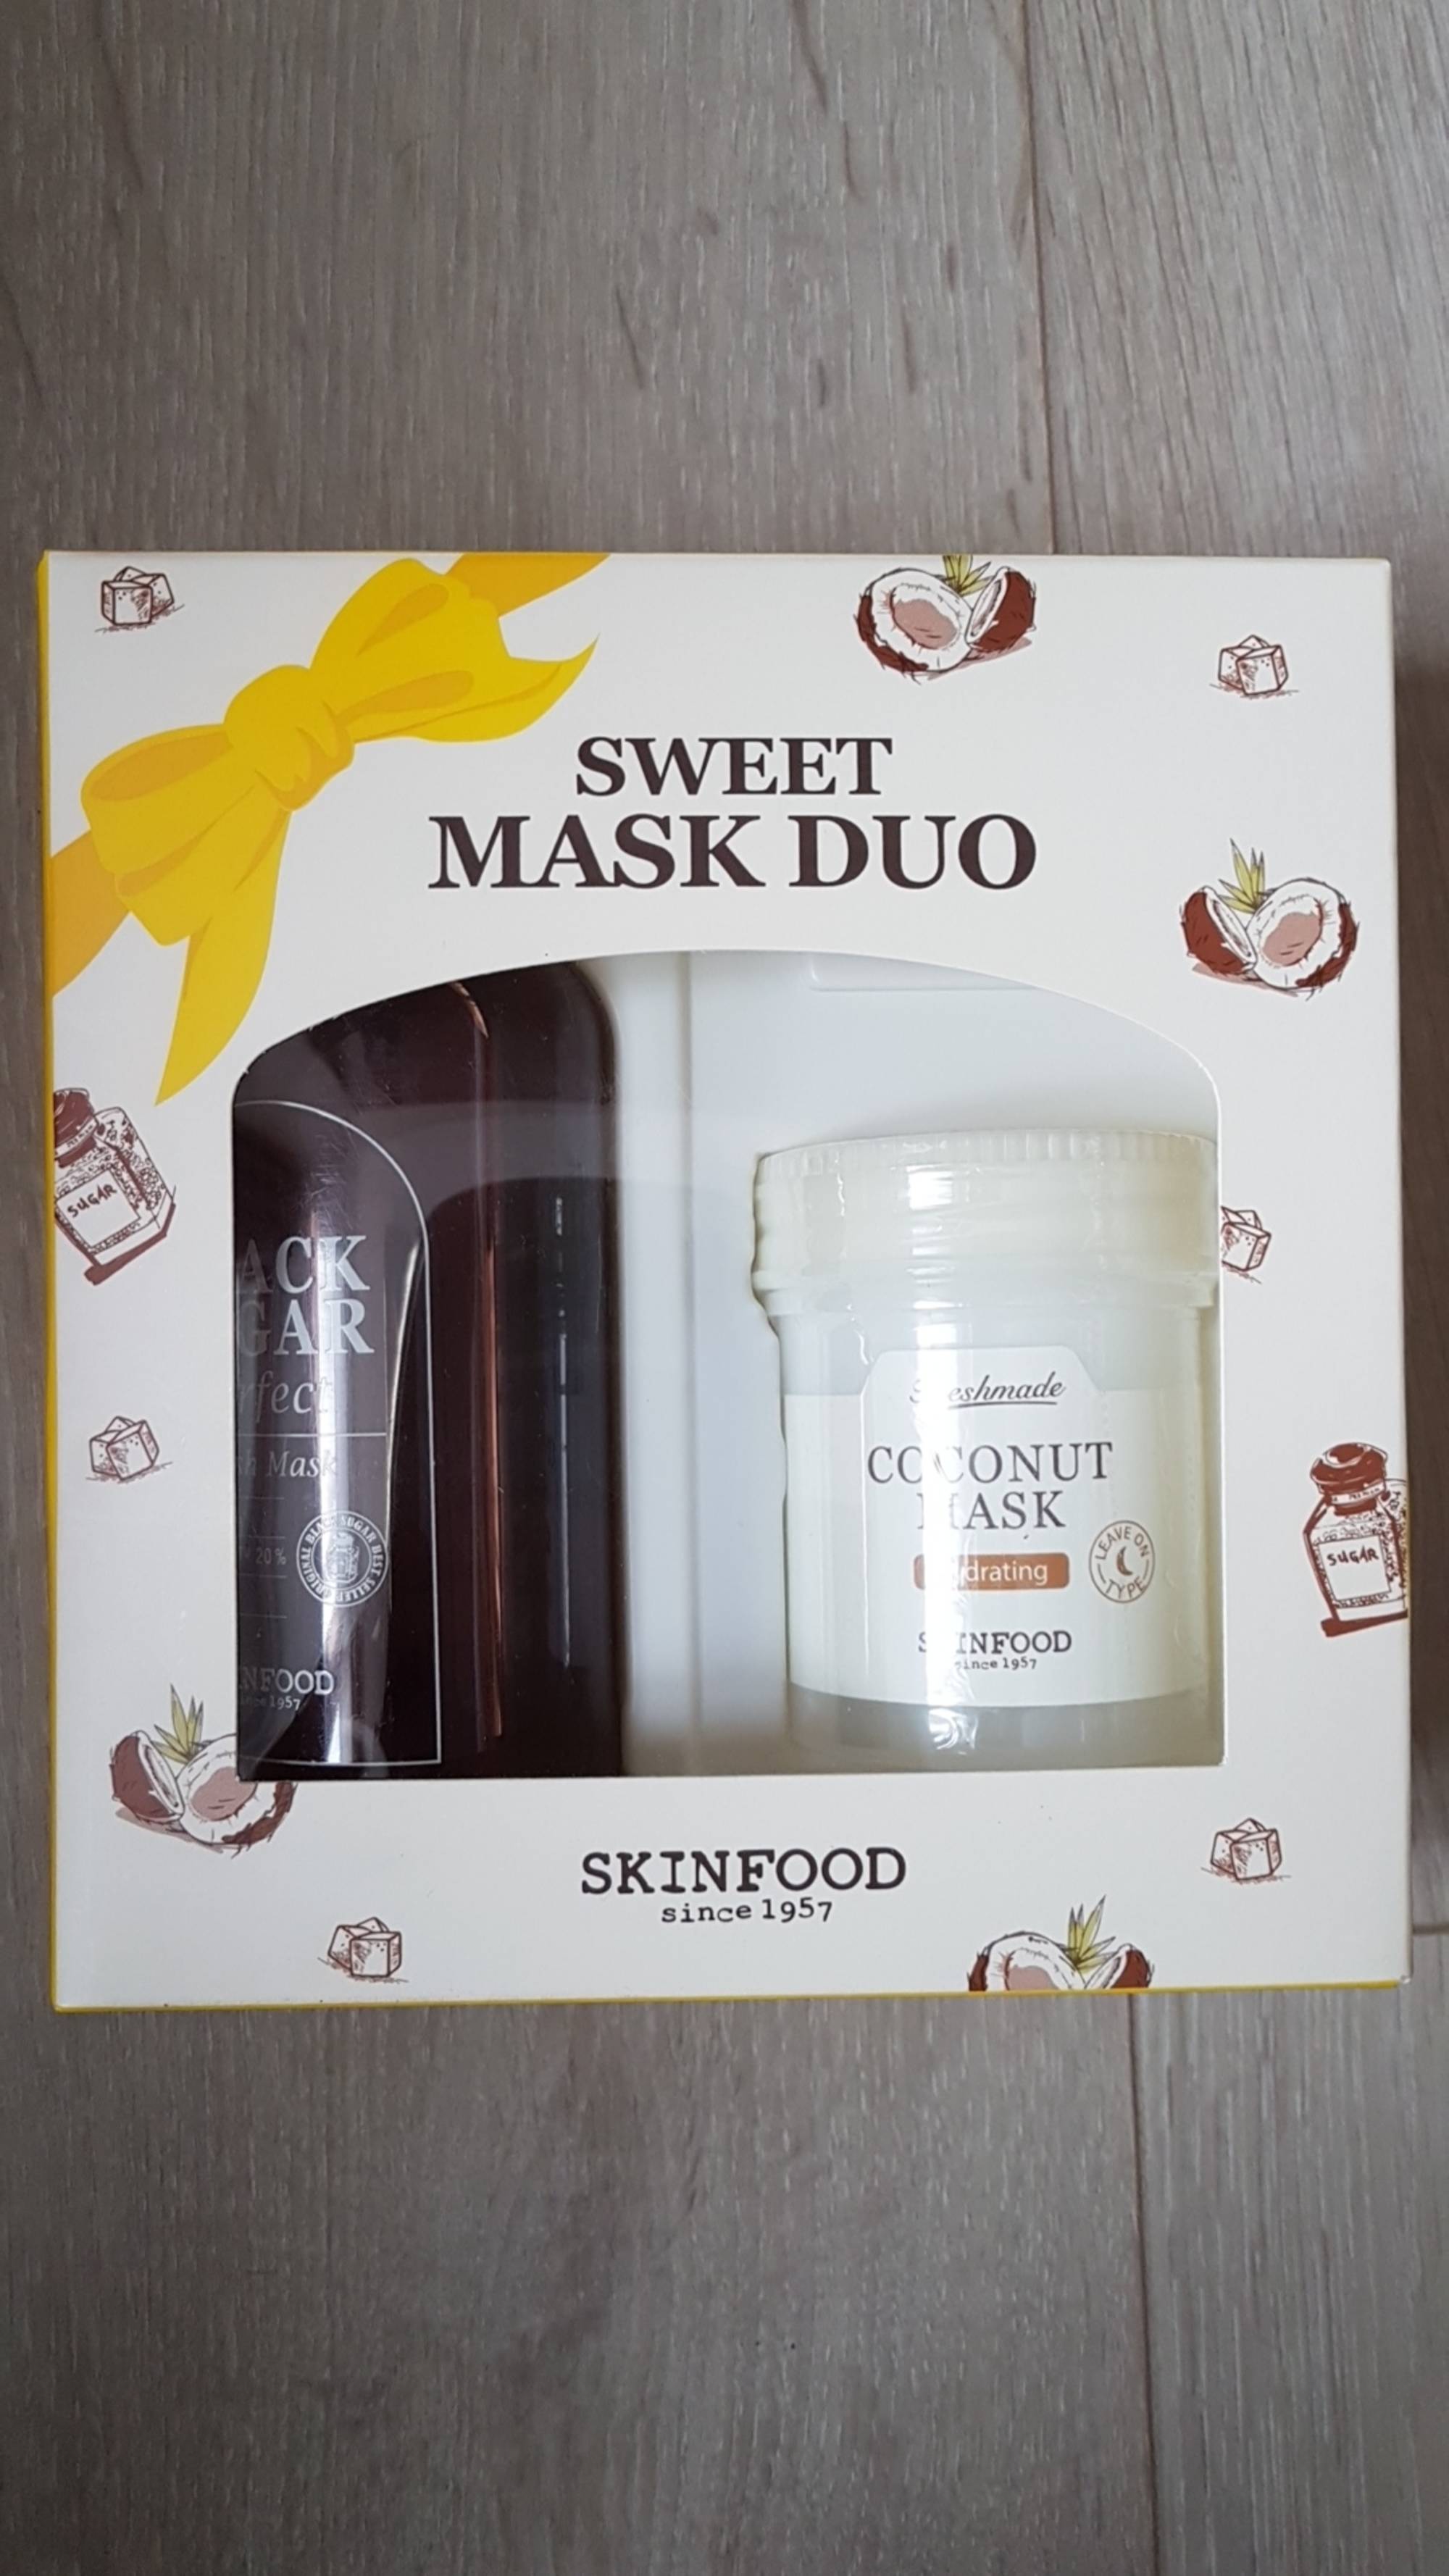 SKINFOOD - Sweet mask duo set